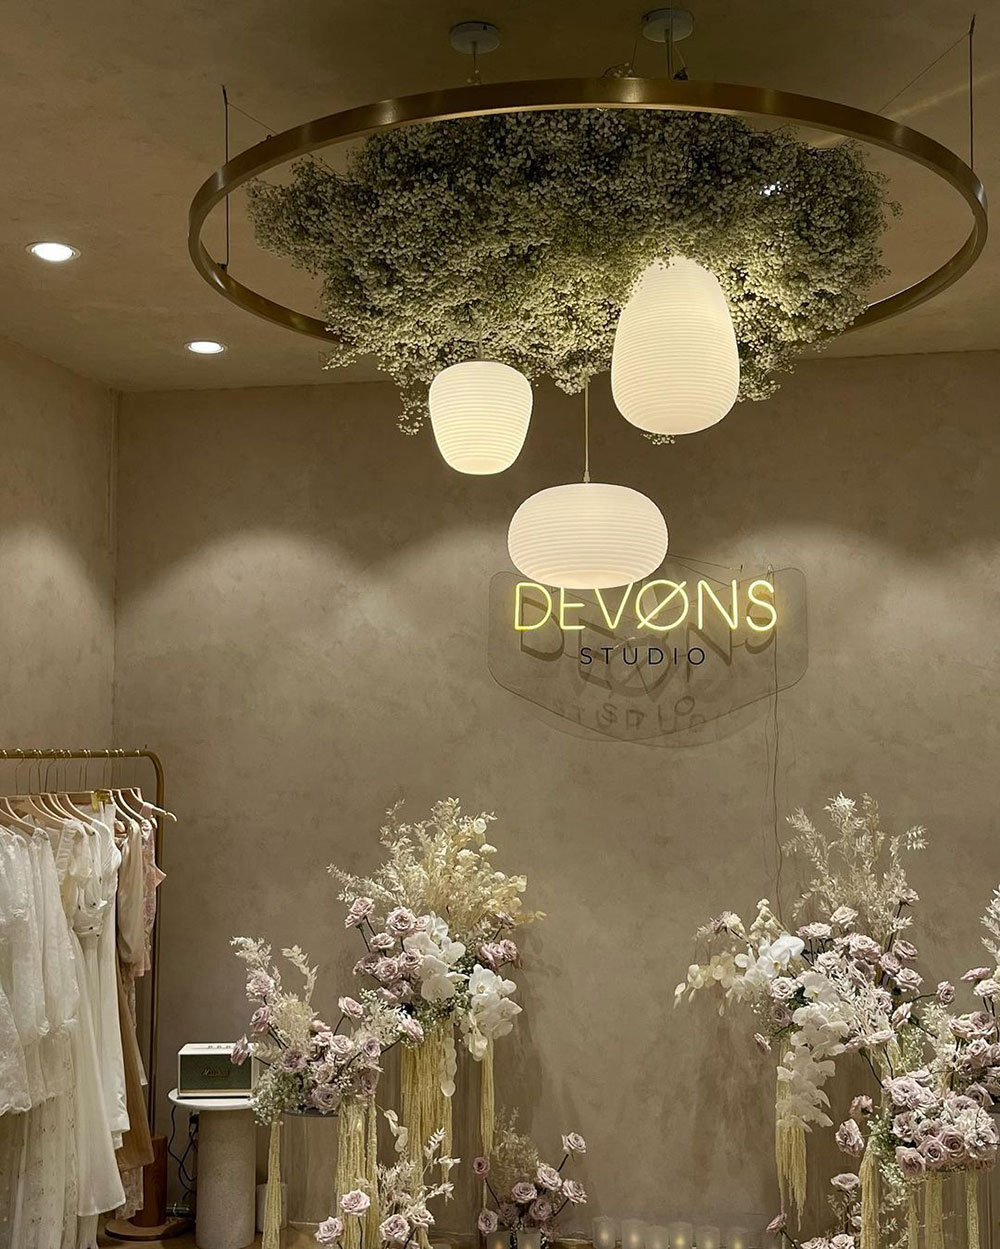 Devons Studio khai trương cửa hàng đầu tiên sau 3 năm hoạt động